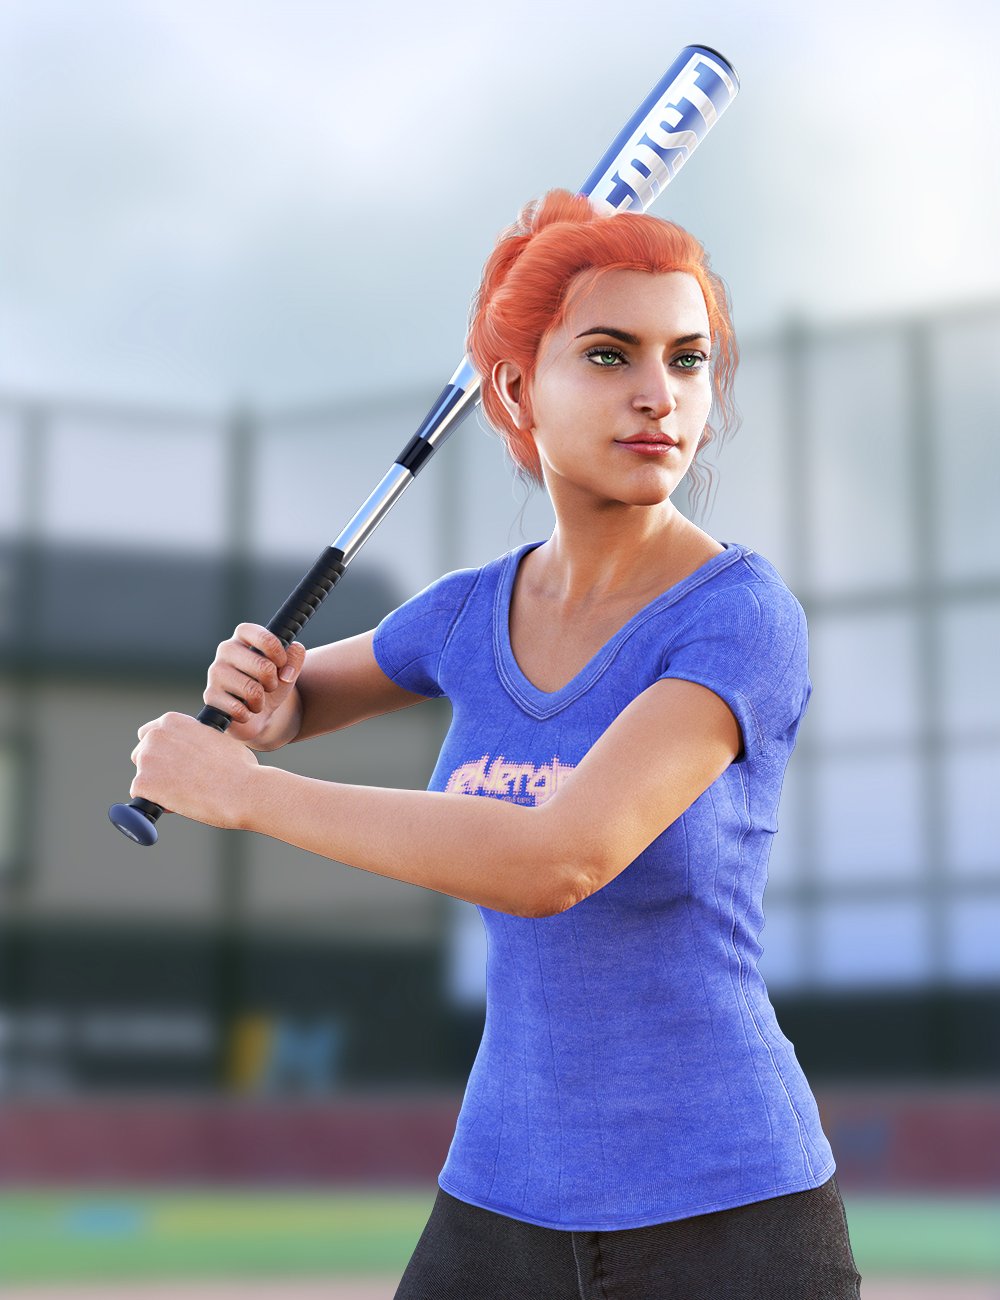 Baseball Animations for Genesis 8 by: ThreeDigital, 3D Models by Daz 3D